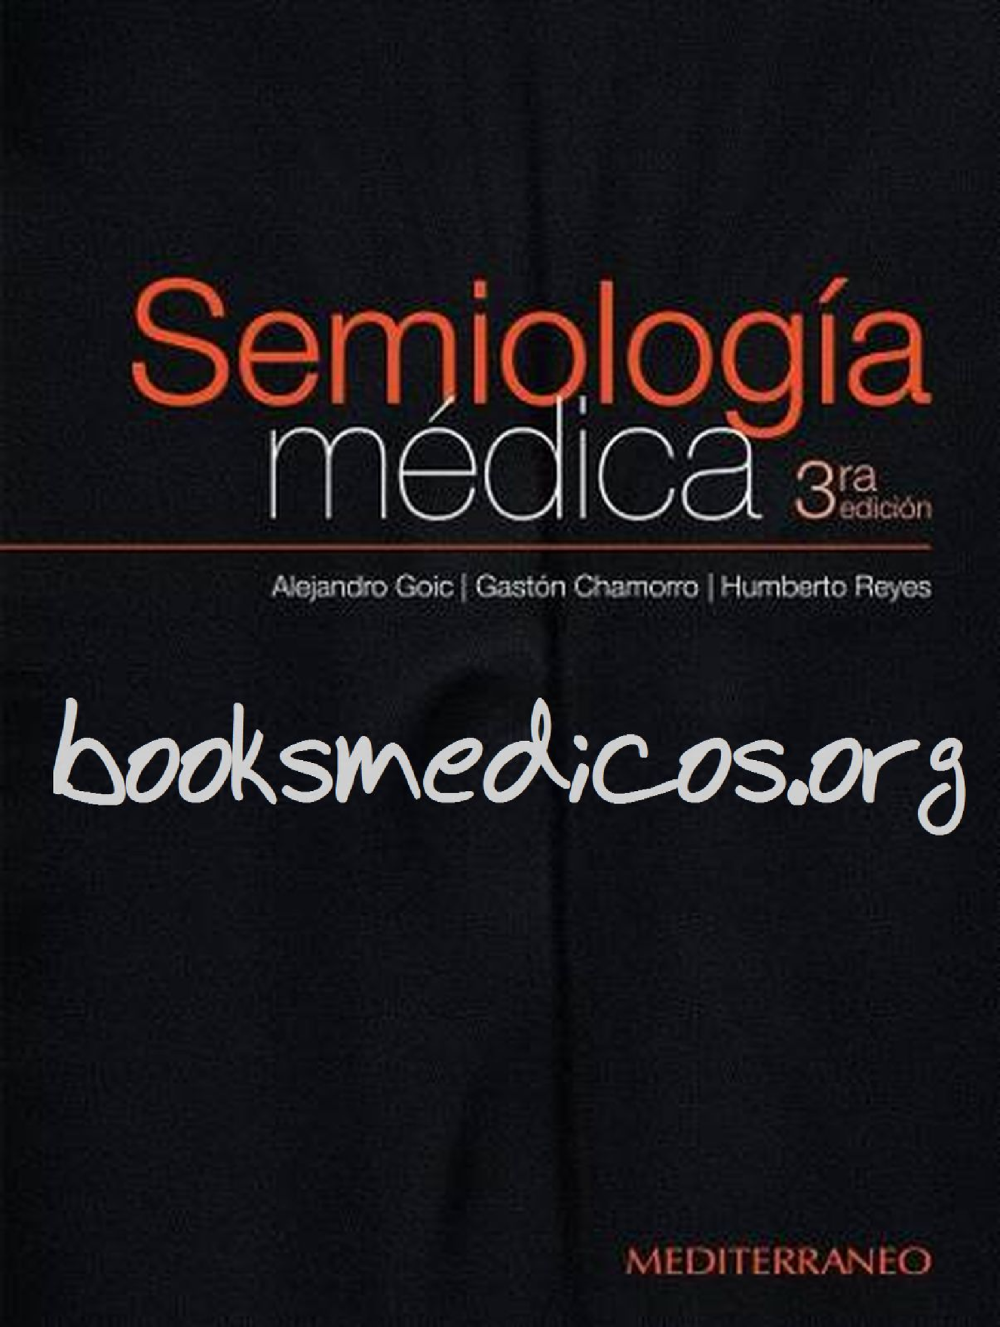 Semiologia Medica Goric 3a Edicion - Baixar pdf de 